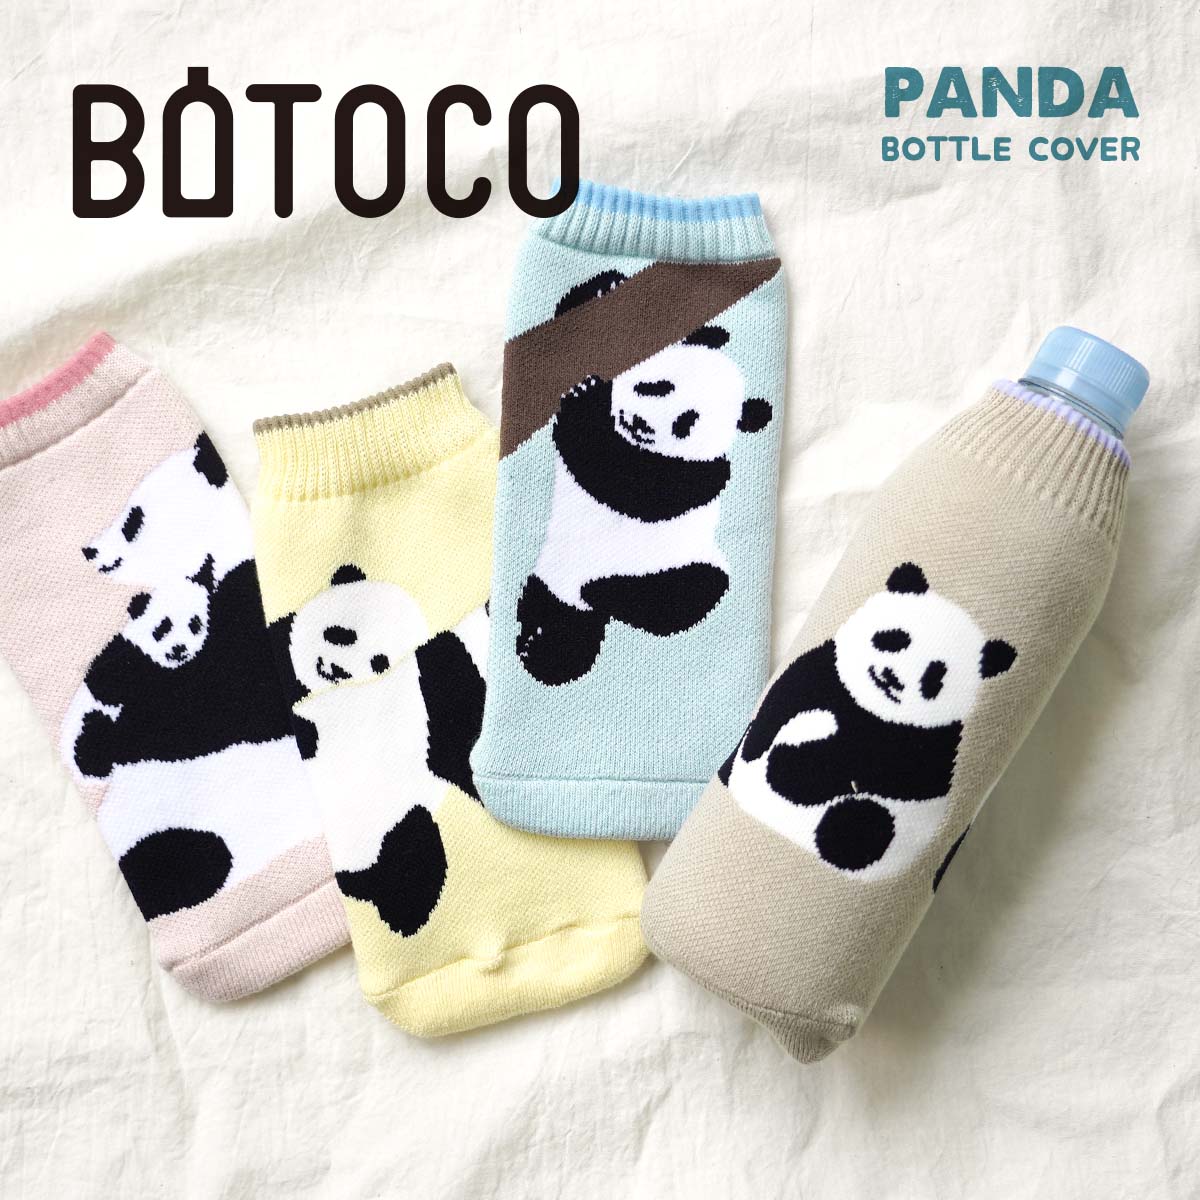 botoco ボトルカバー パンダ panda ボトルカバー ボトコ 500ml ペットボトルカバー かわいい 靴下 夏 ブランド ニット タオル  水筒カバー